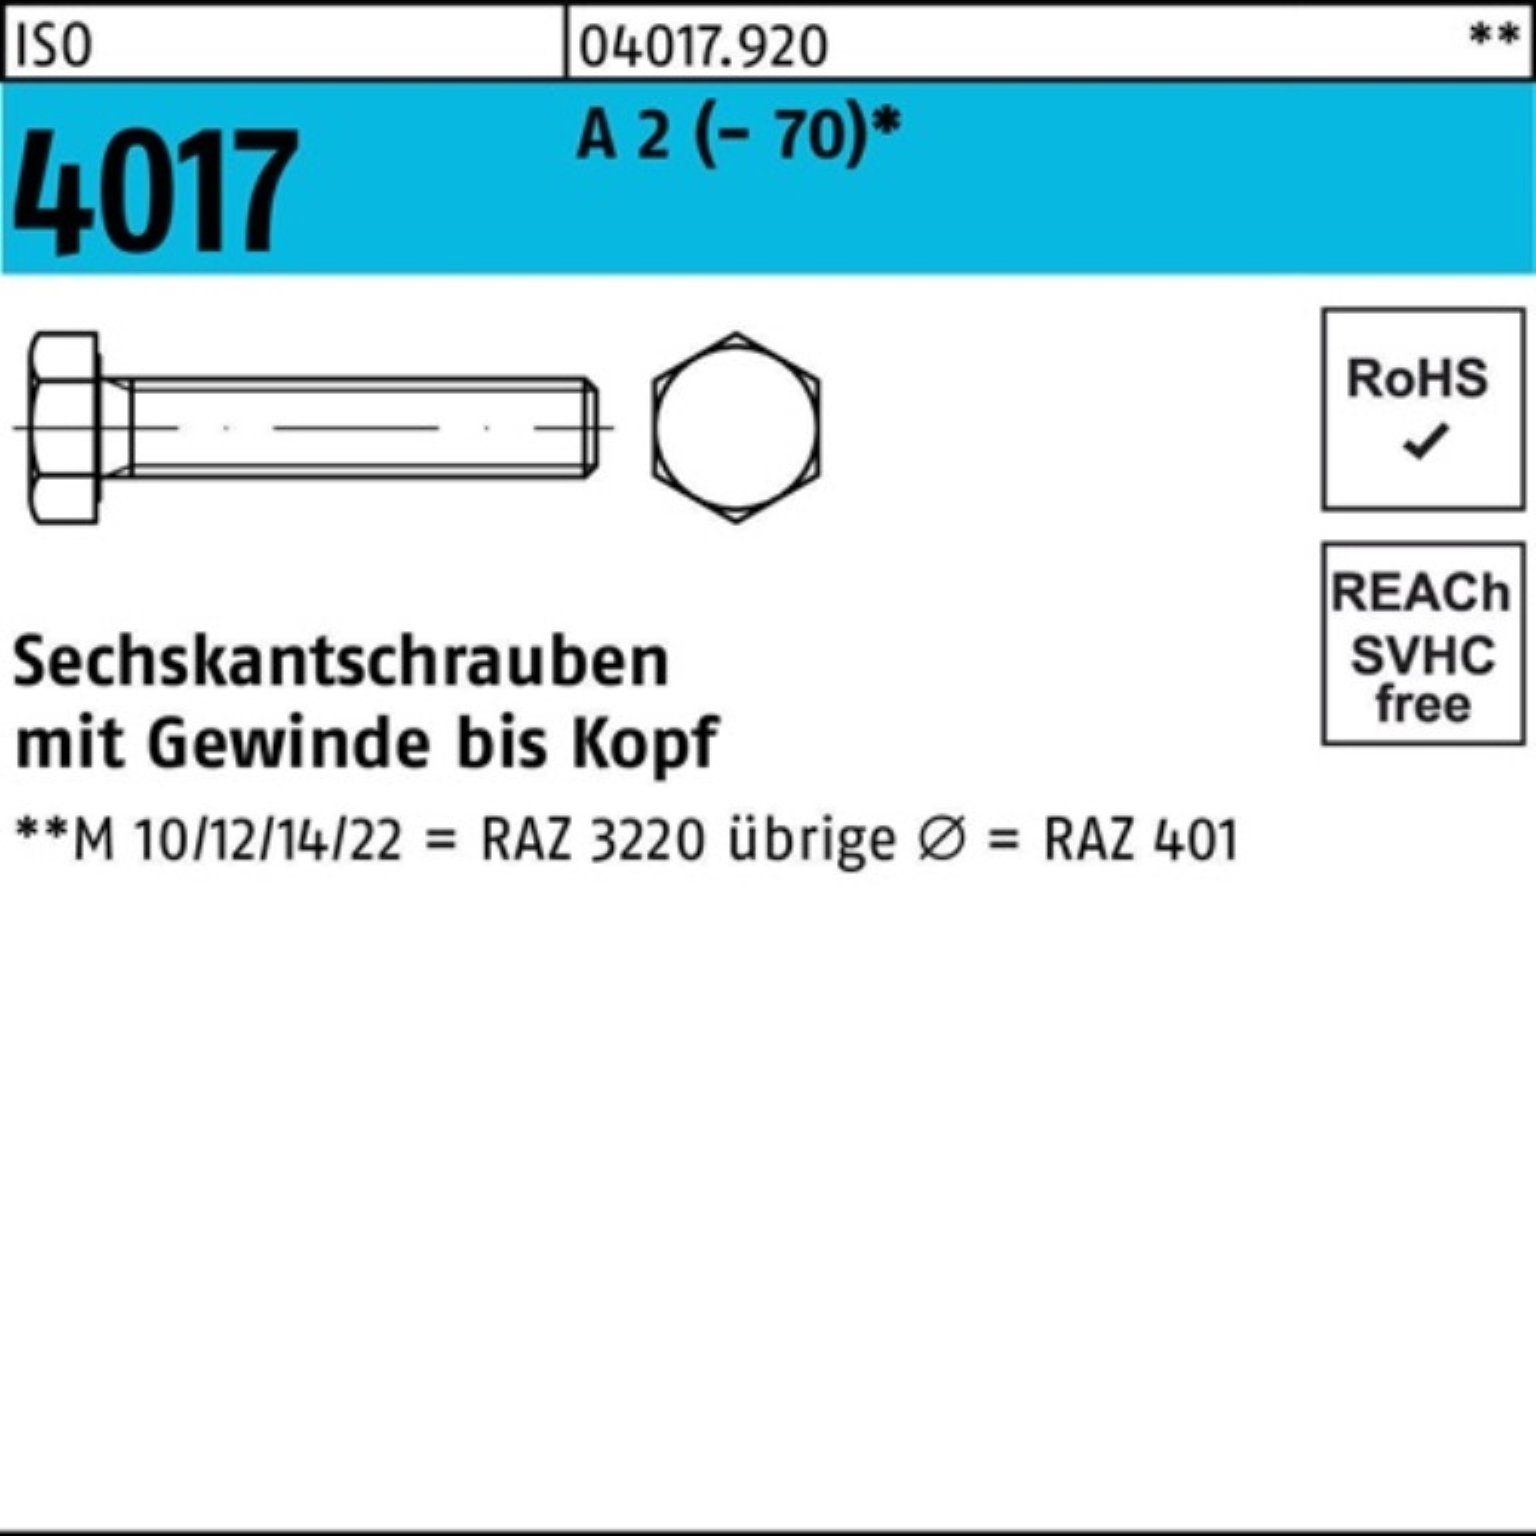 Bufab Sechskantschraube 100er Pack Sechskantschraube Stück 90 A ISO 2 VG M20x 4017 25 (70)